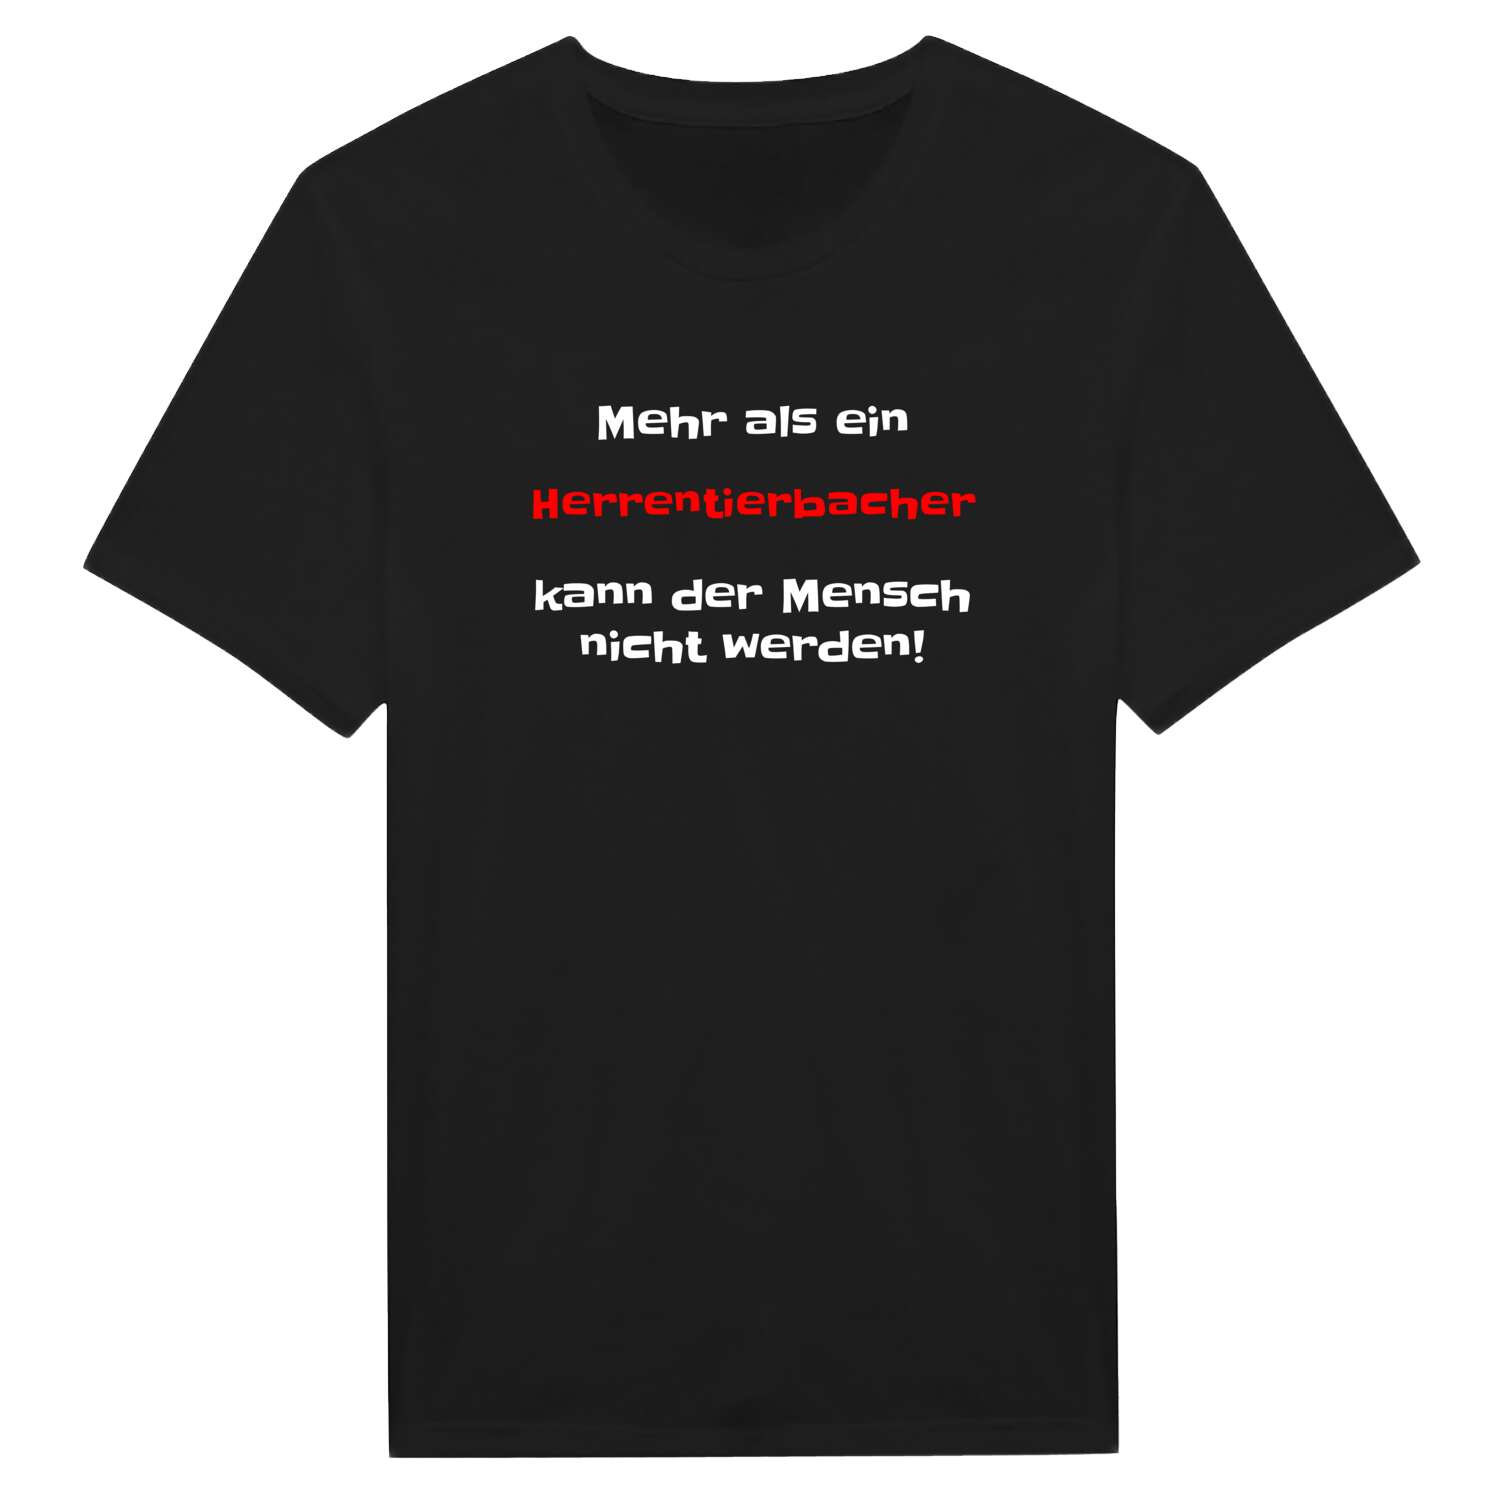 Herrentierbach T-Shirt »Mehr als ein«